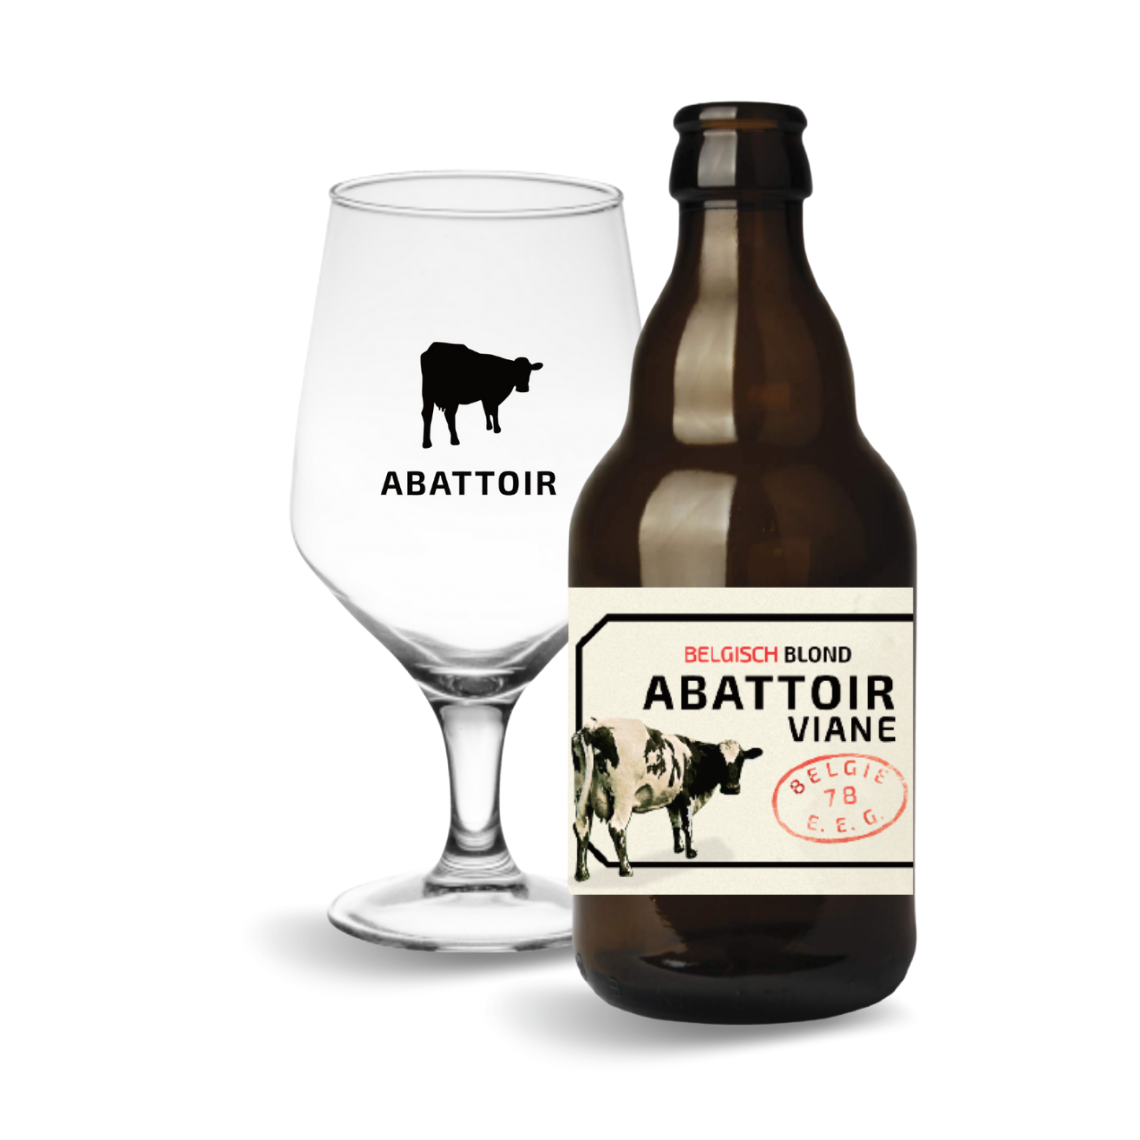 Maar Toevlucht verdrietig Abattoir Viane | Belgisch bier uit Geraardsbergen | Online bier kopen